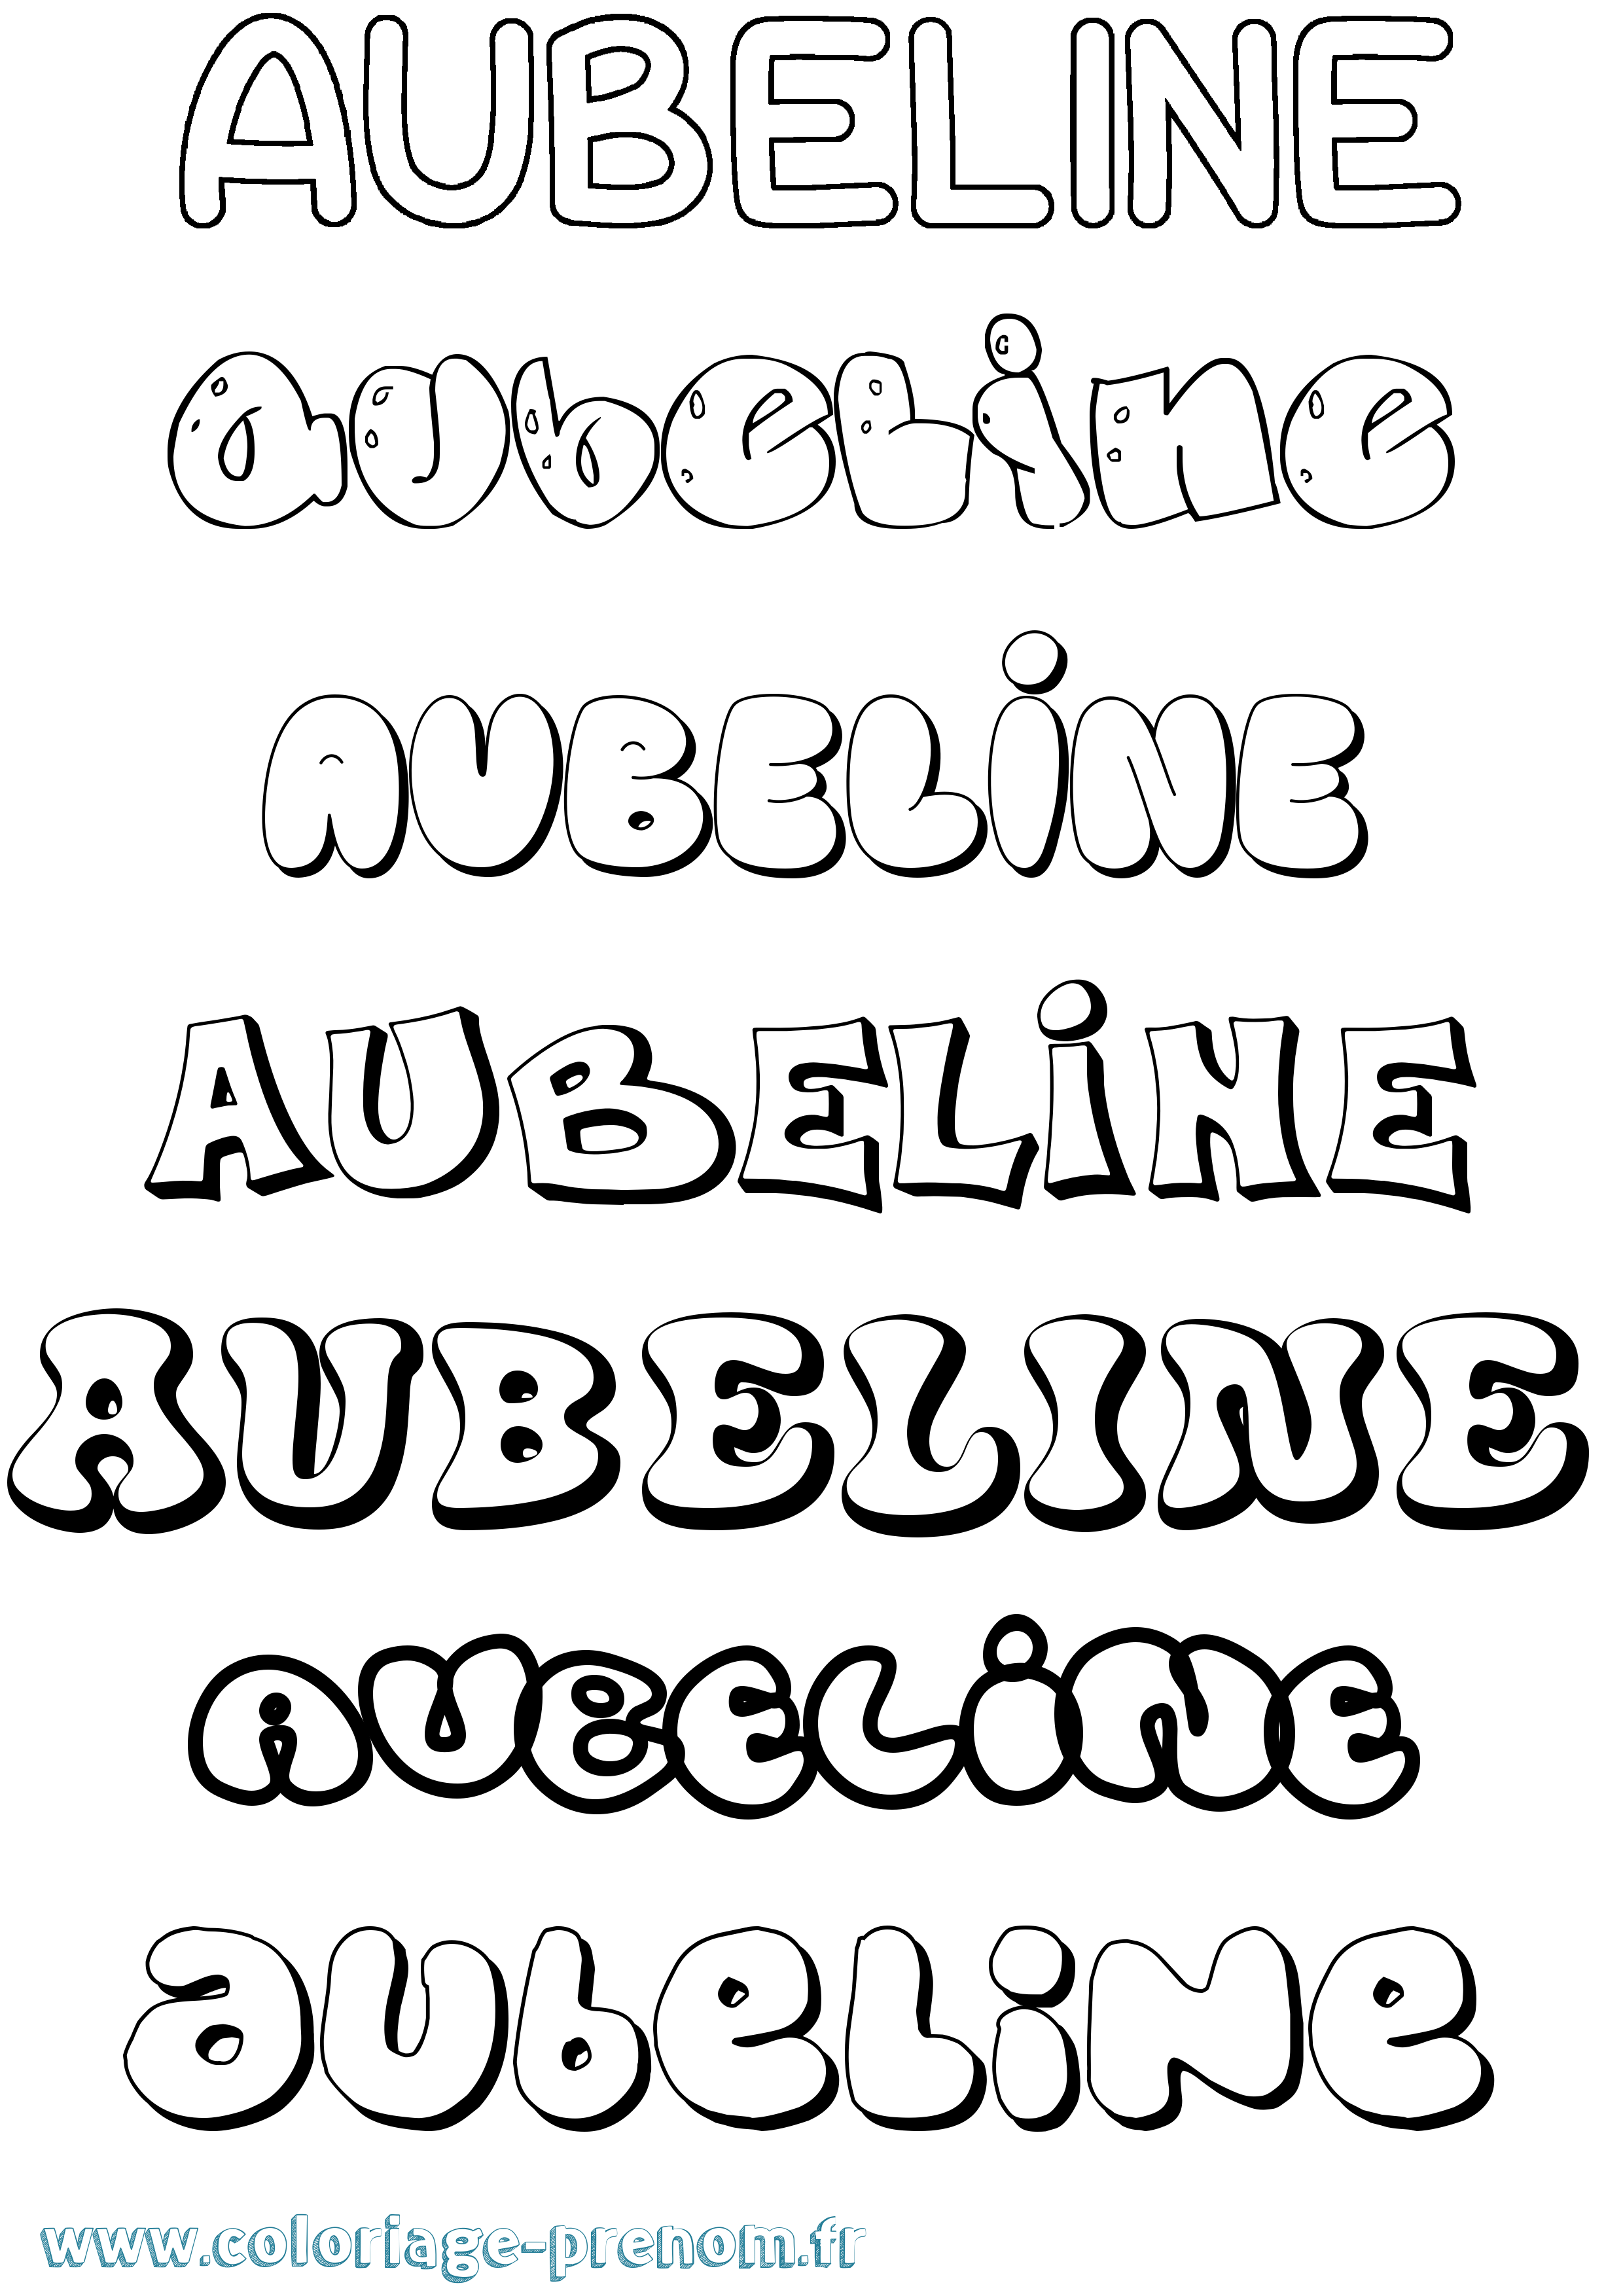 Coloriage prénom Aubeline Bubble